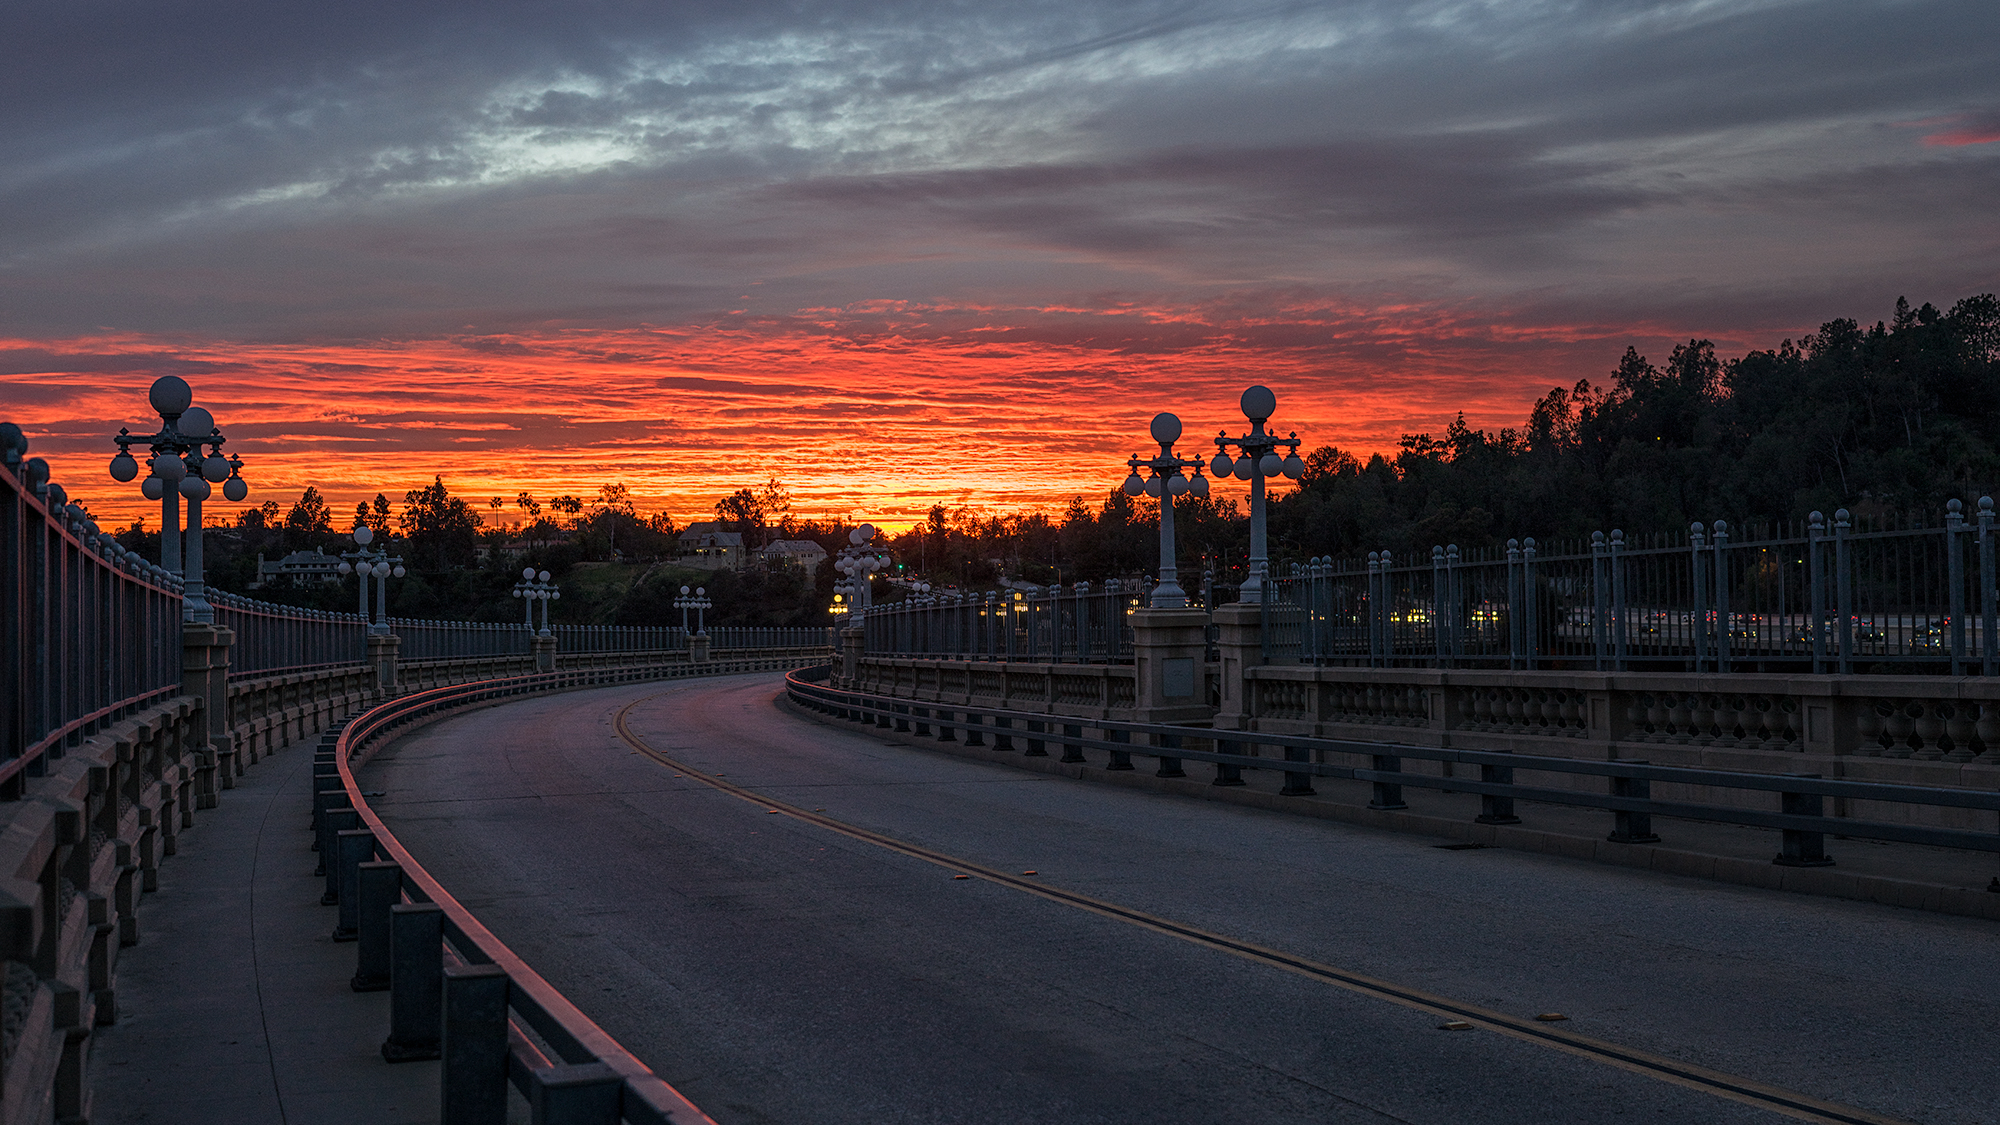 The Colorado Street Bridge in Pasadena, CA